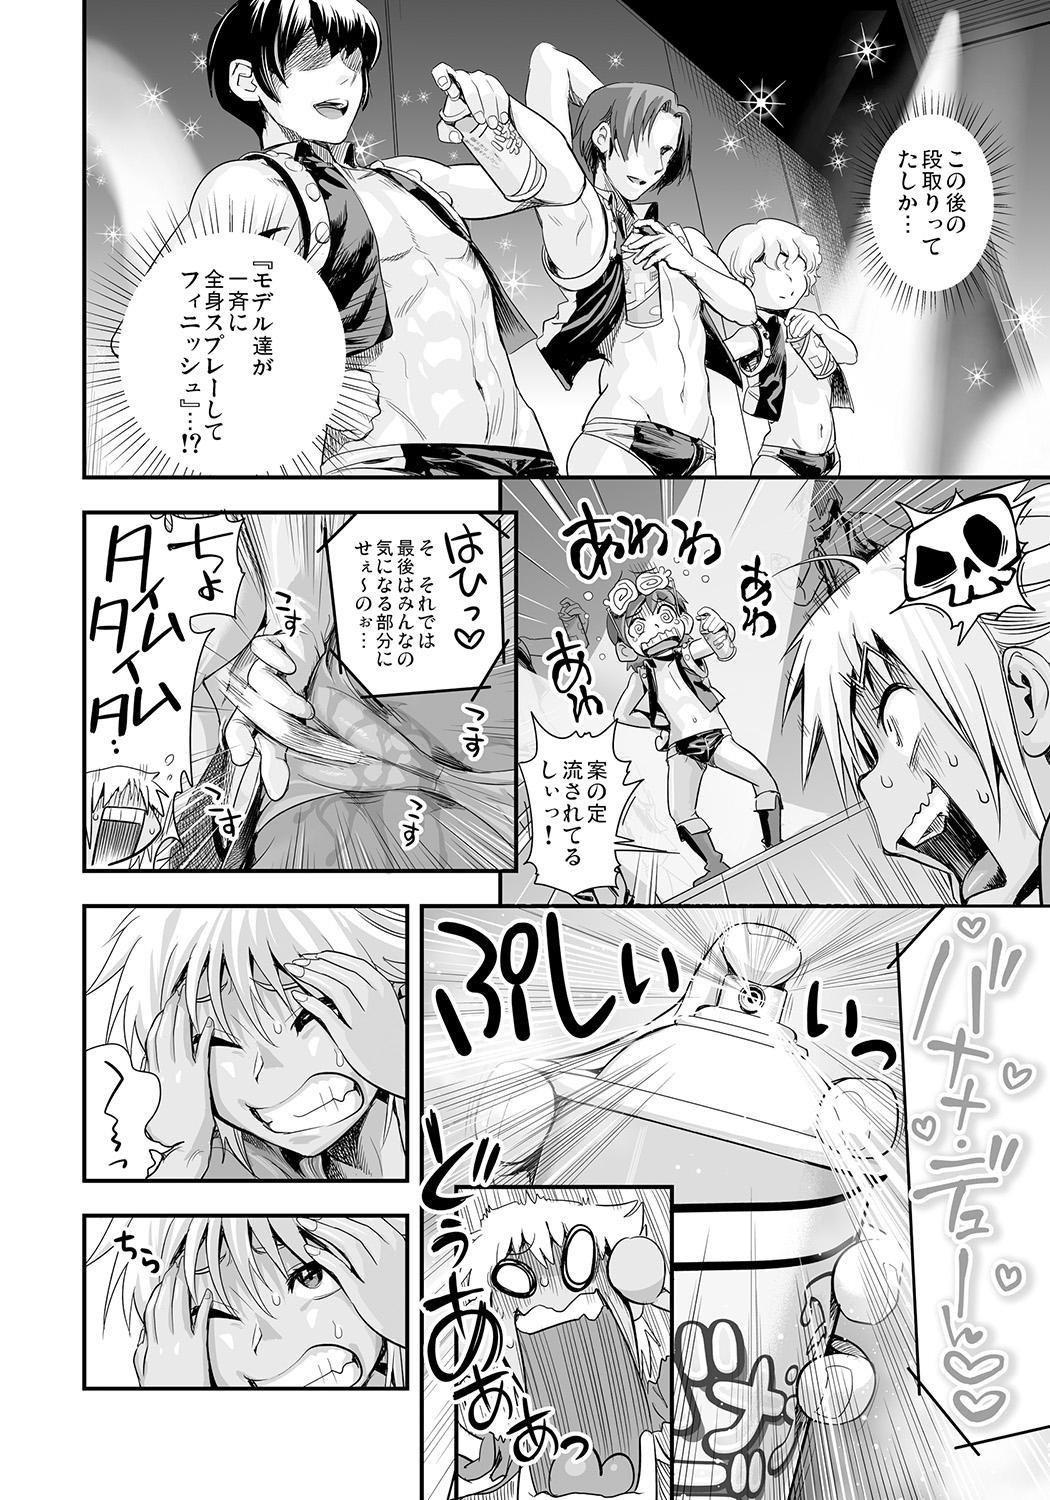 Gaygroup Henshin!? Sukekomas!! Dai 5 wa Amaku Fukuramu Banana no Kaori? Hanra de Yuuwaku Ikisugi Seihin Happyoukai!?! Face - Page 8